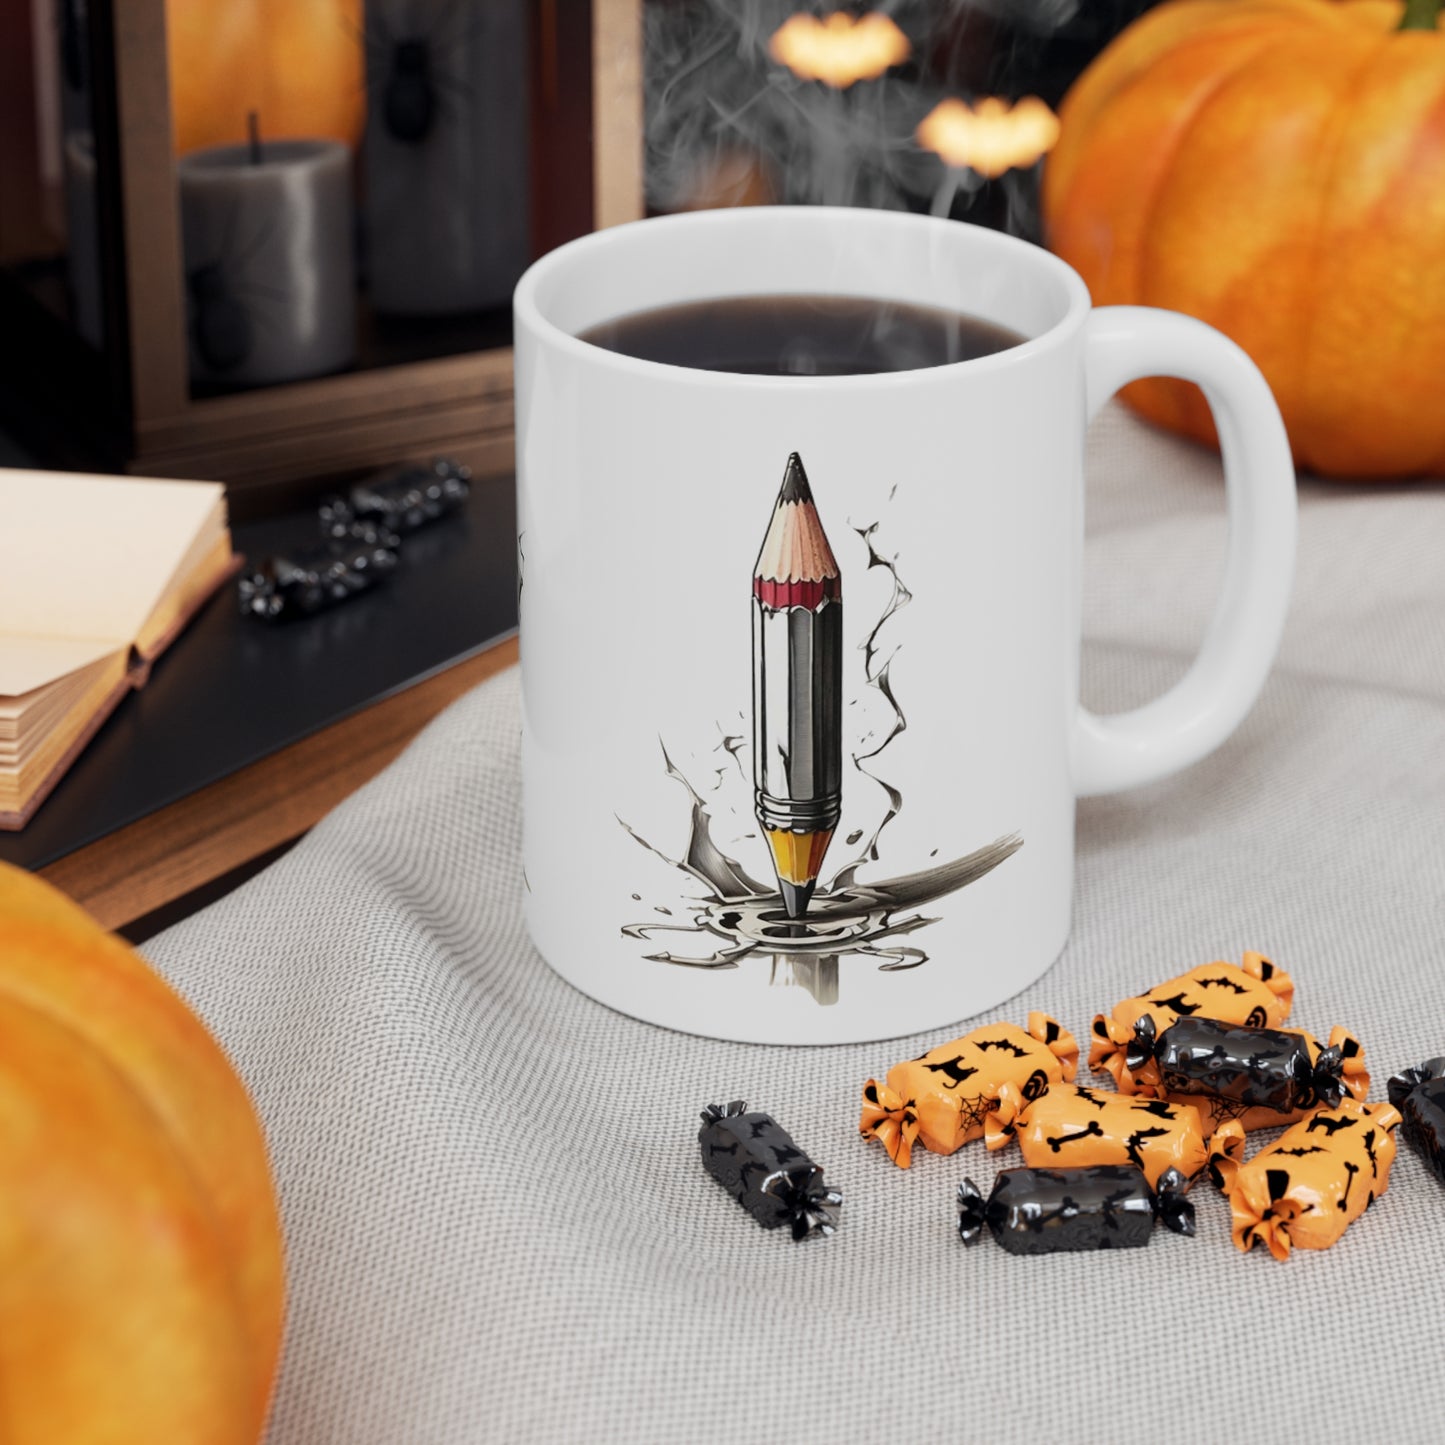 Pencils Art Mug - Ceramic Coffee Mug 11oz